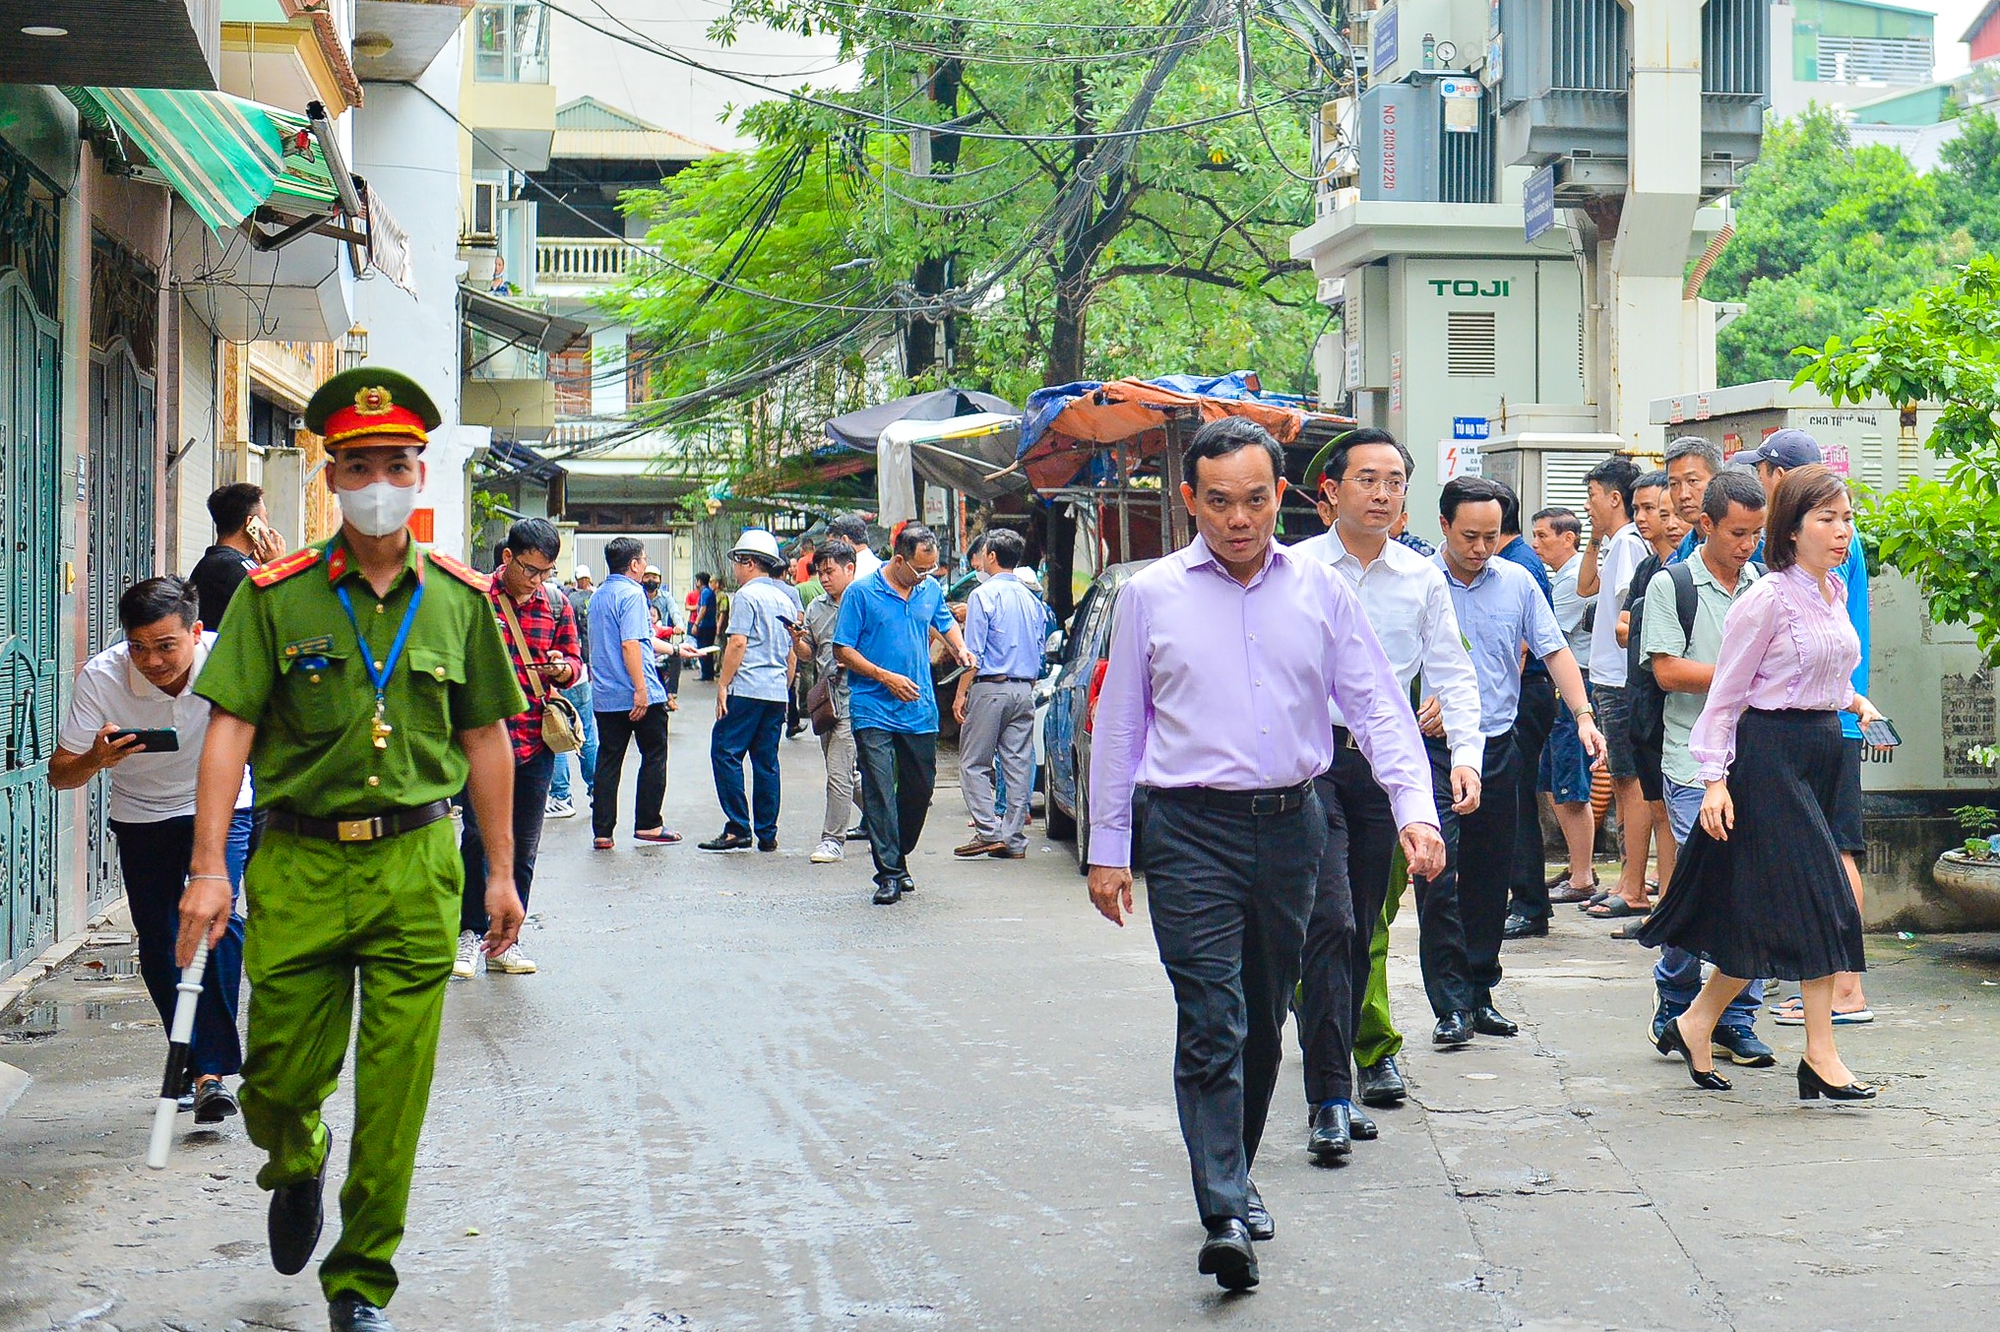 Bí thư Hà Nội, Phó Thủ tướng đến hiện trường chỉ đạo khắc phục hậu quả vụ cháy chung cư mini - Ảnh 2.